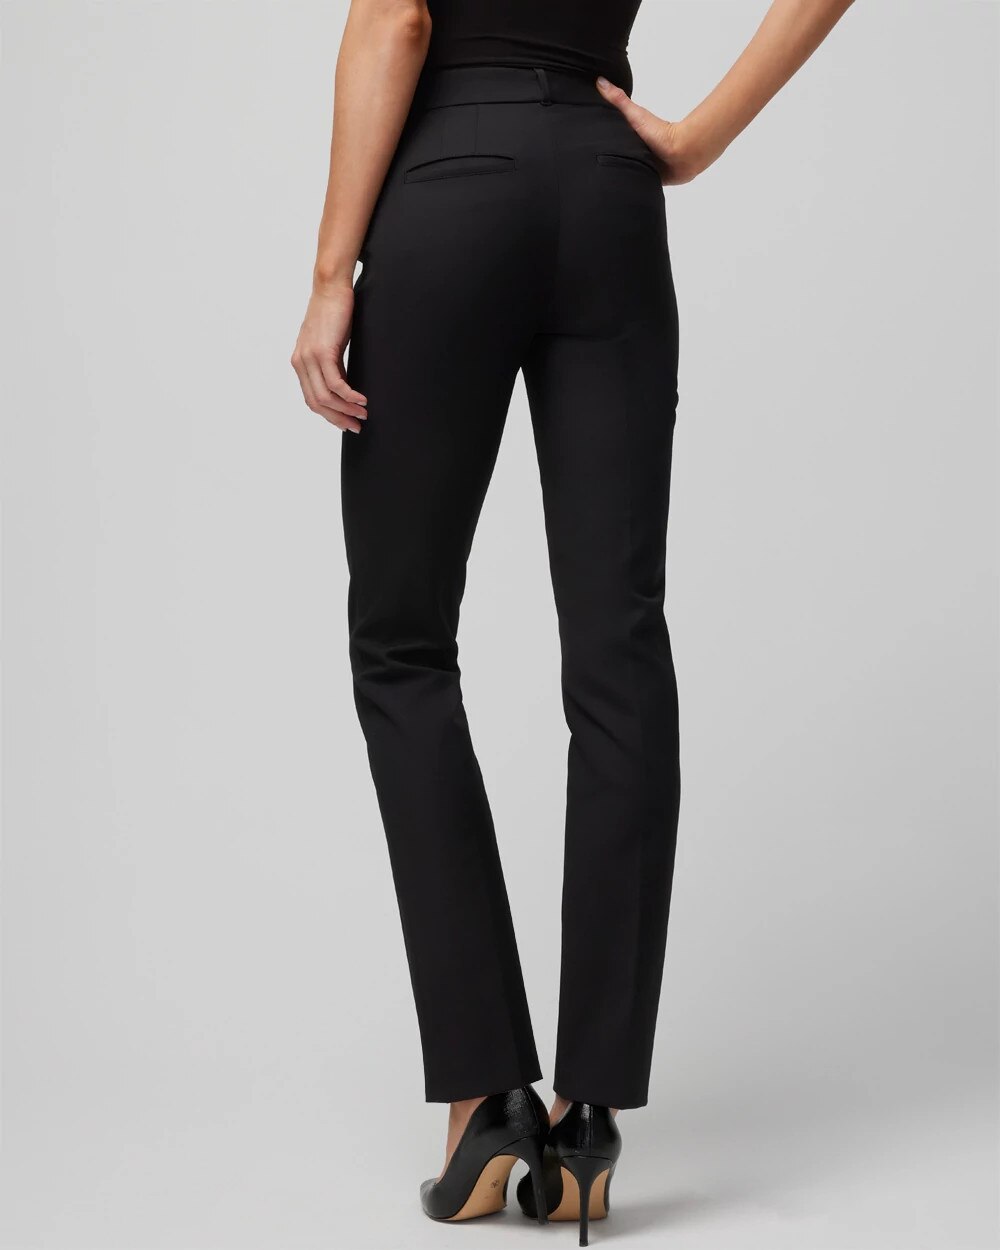 Buy Forever New Black Pants for Women's Online @ Tata CLiQ